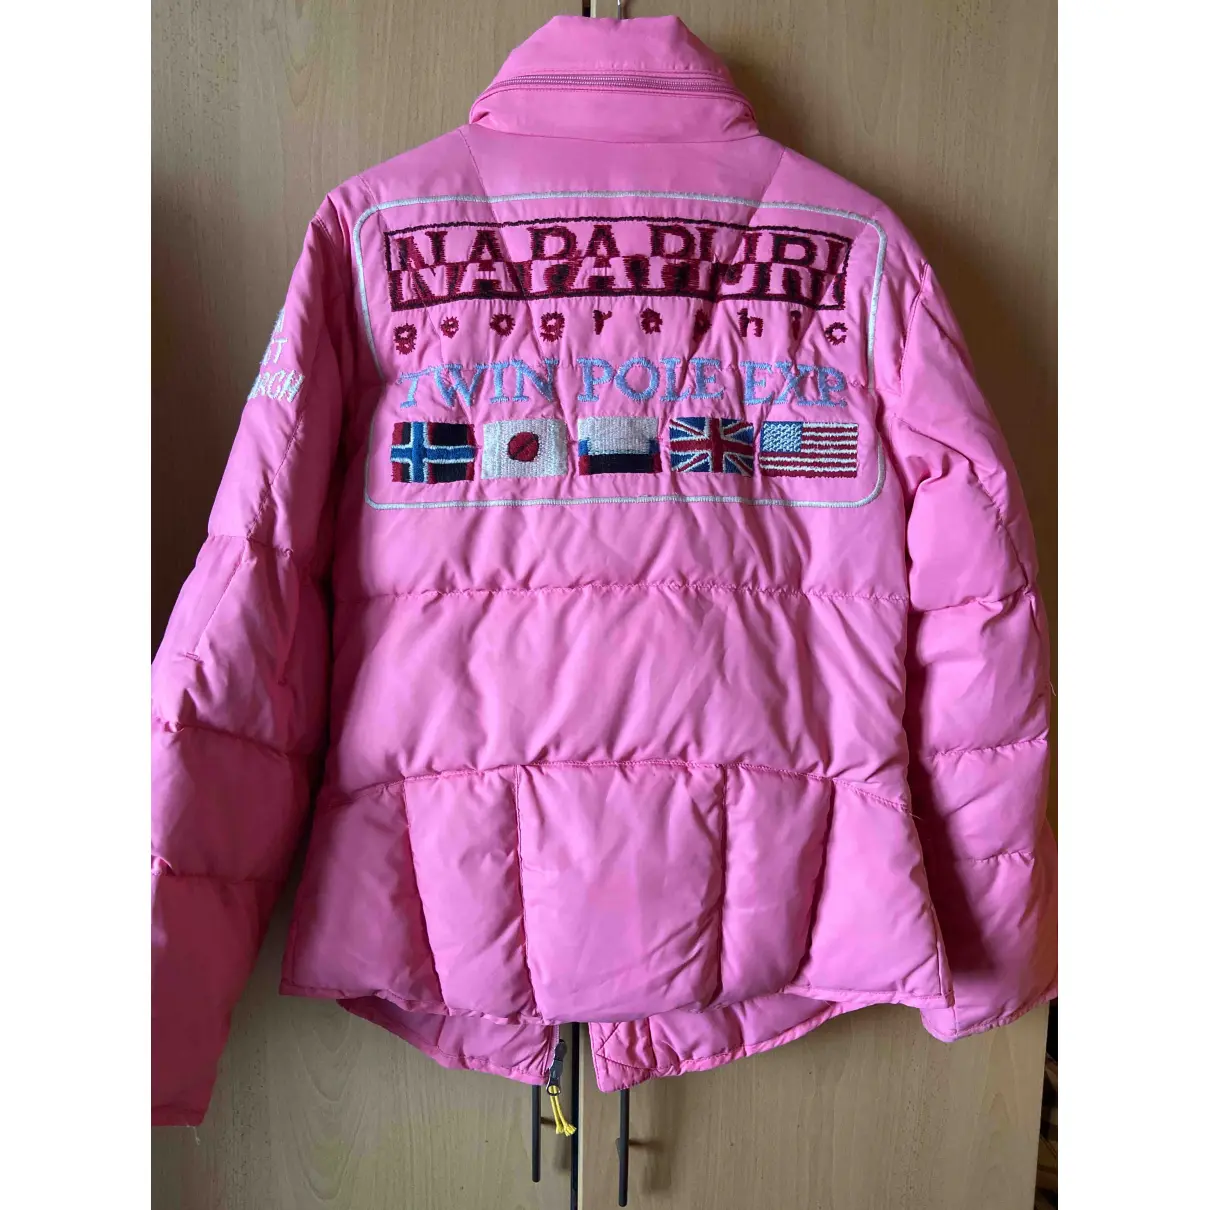 Buy Napapijri Jacket online